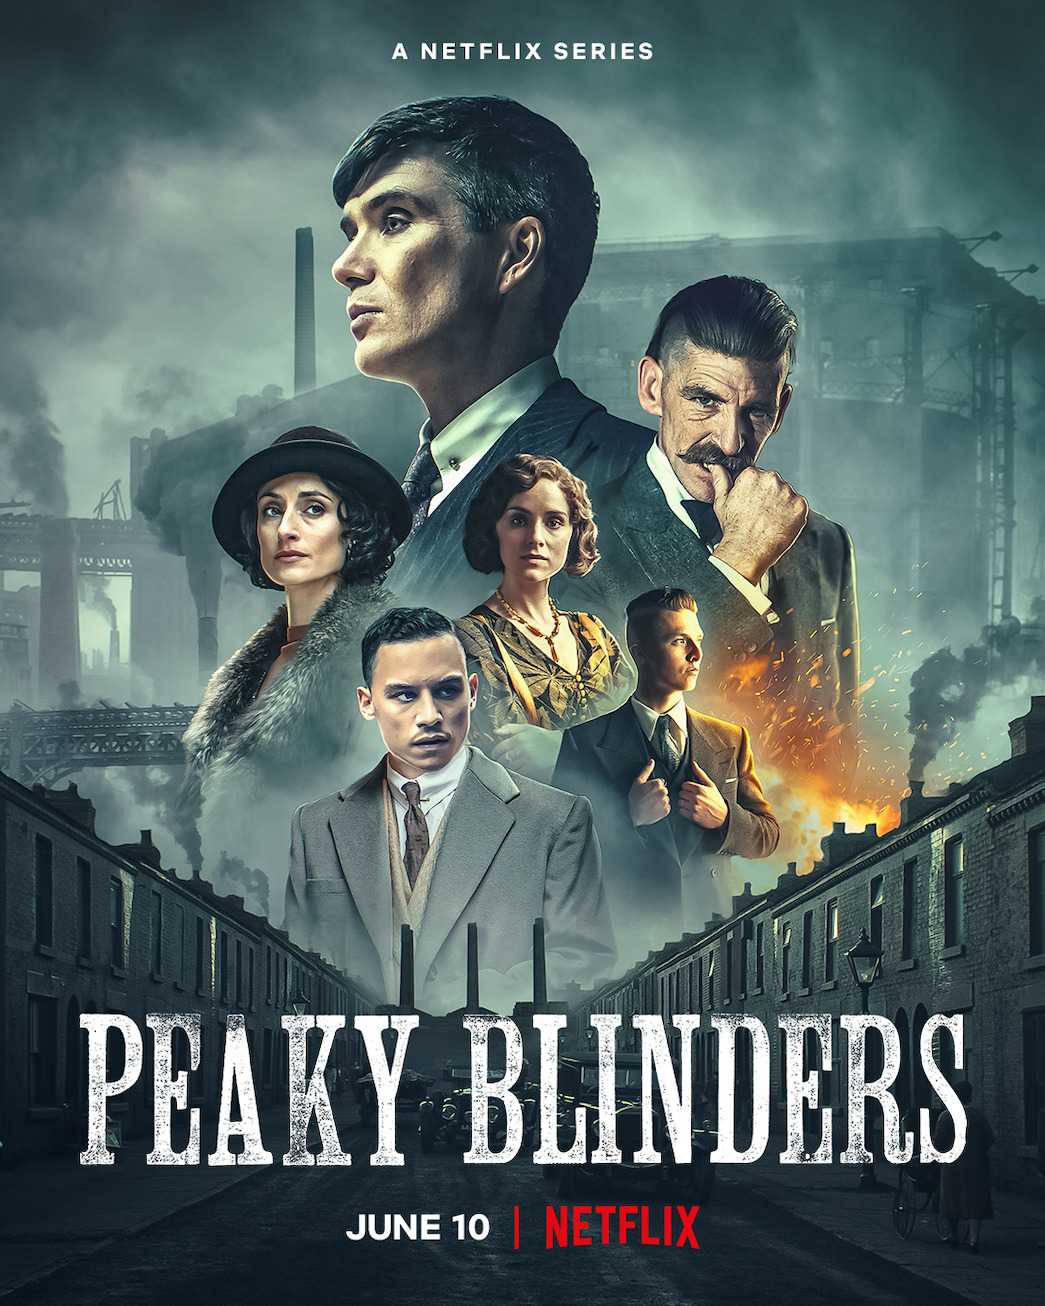 Peaky Blinders Season 6 (2022) พีกี้ ไบลน์เดอร์ส ซีซั่น 6 ตอนที่ 1-6 ซับไทย